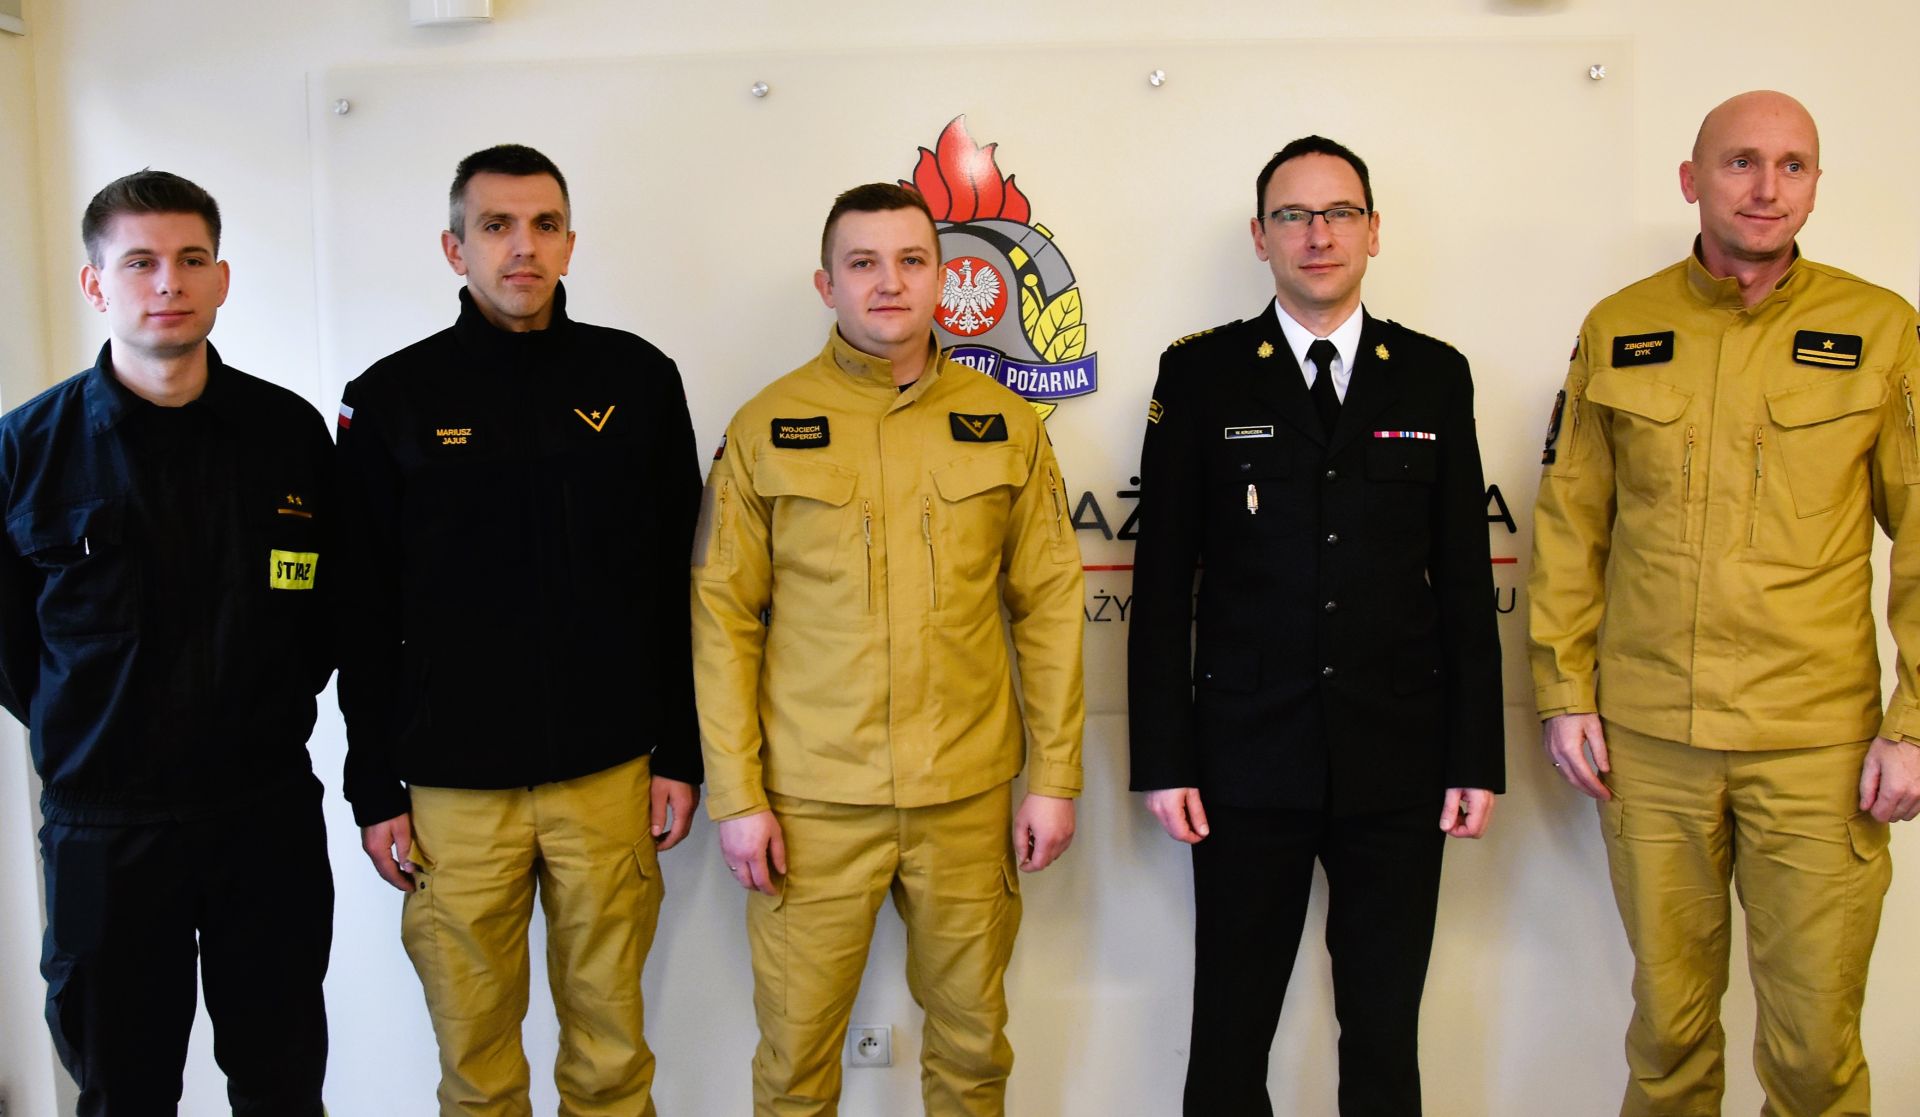 Od prawej Zbigniew Dyk, zastępca komendanta, komendant Wojciech Kruczek, Wojciech Kasperzec, Mariusz Jajus, Bartosz Sitek